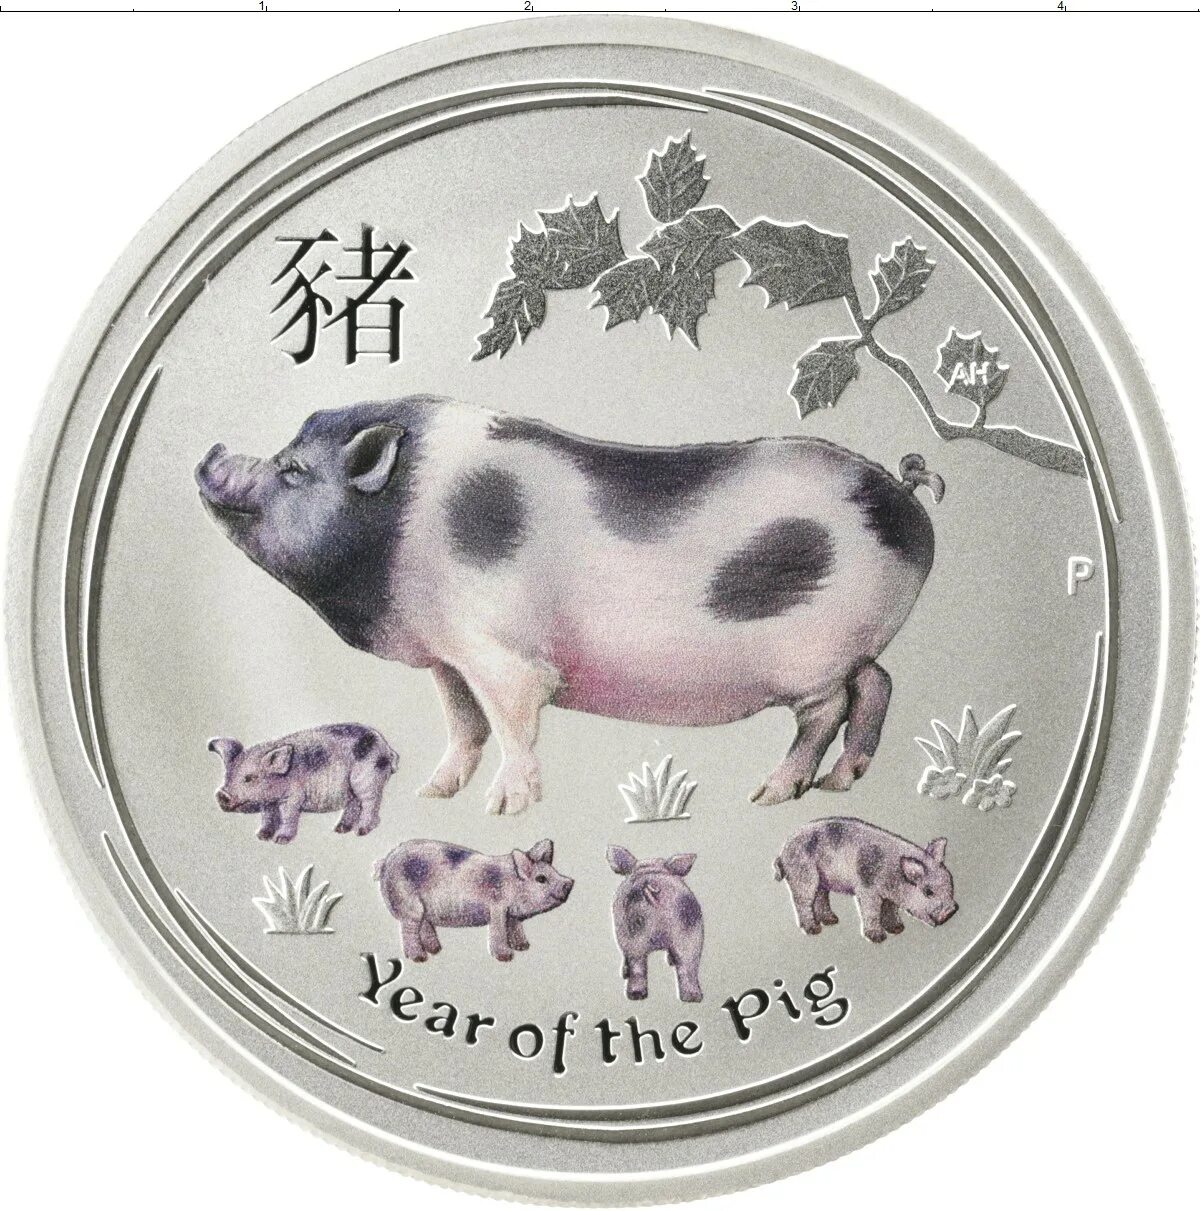 Австралия 50 центов, 2019 год свиньи. Монета год свиньи 2019 серебро. Монета со свиньей. Монета стерео свинья серебро. Свинья монеты